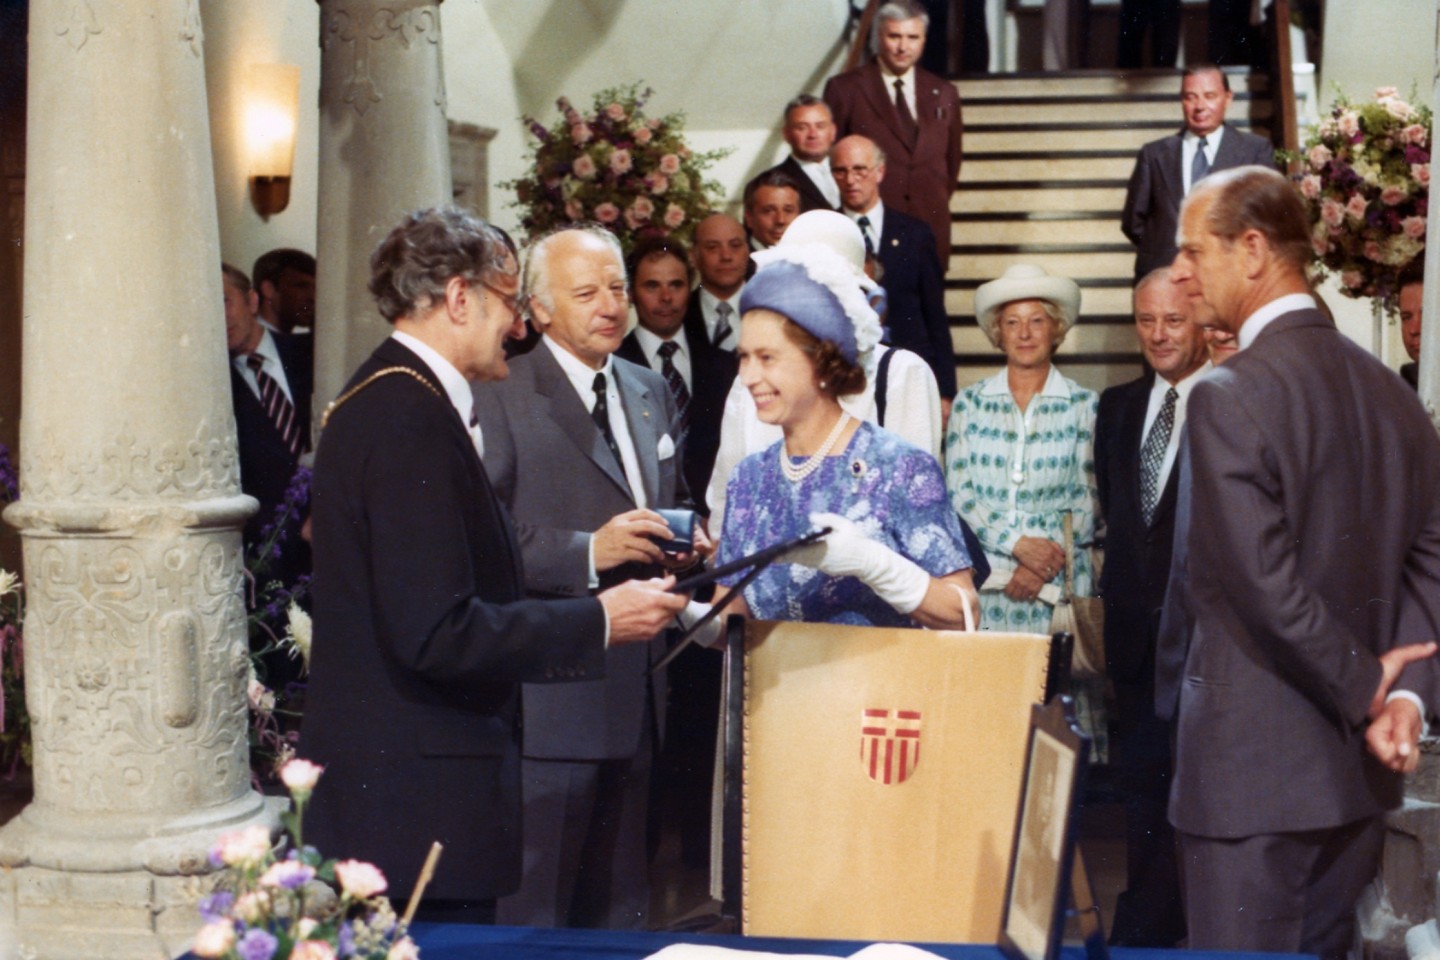 Bei der Eintragung ins Goldene Buch der Stadt Paderborn am 7. Juli 1977 im Paderborner Rathaus: (v.l.) Bürgermeister Herbert Schwiete, Bundespräsident Walter Scheel, Königin Elizabeth II. und Prinz Ph